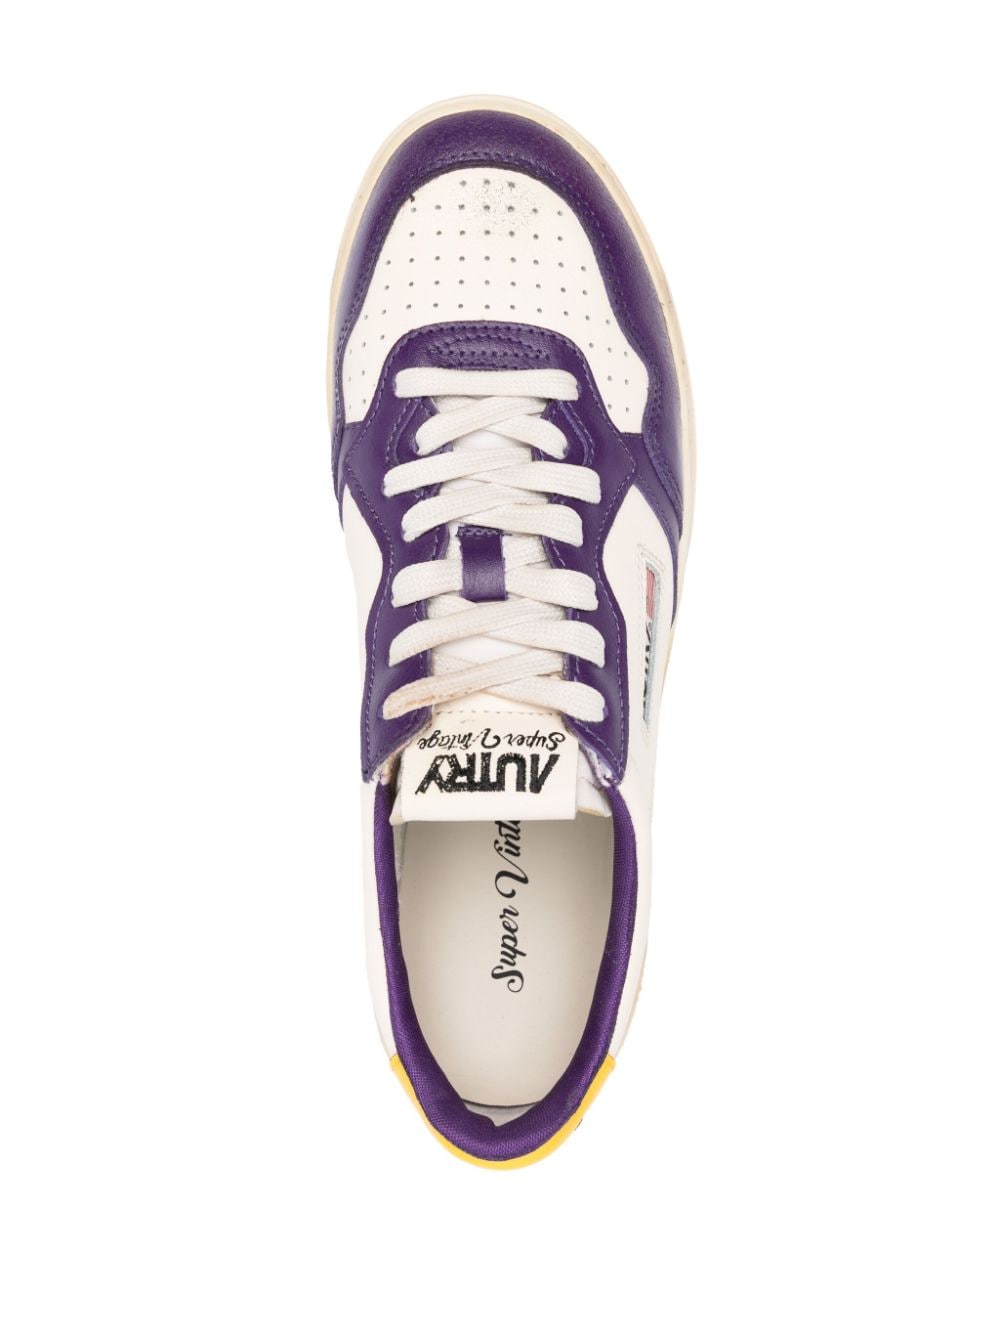 Sneaker supervintage bianca e viola